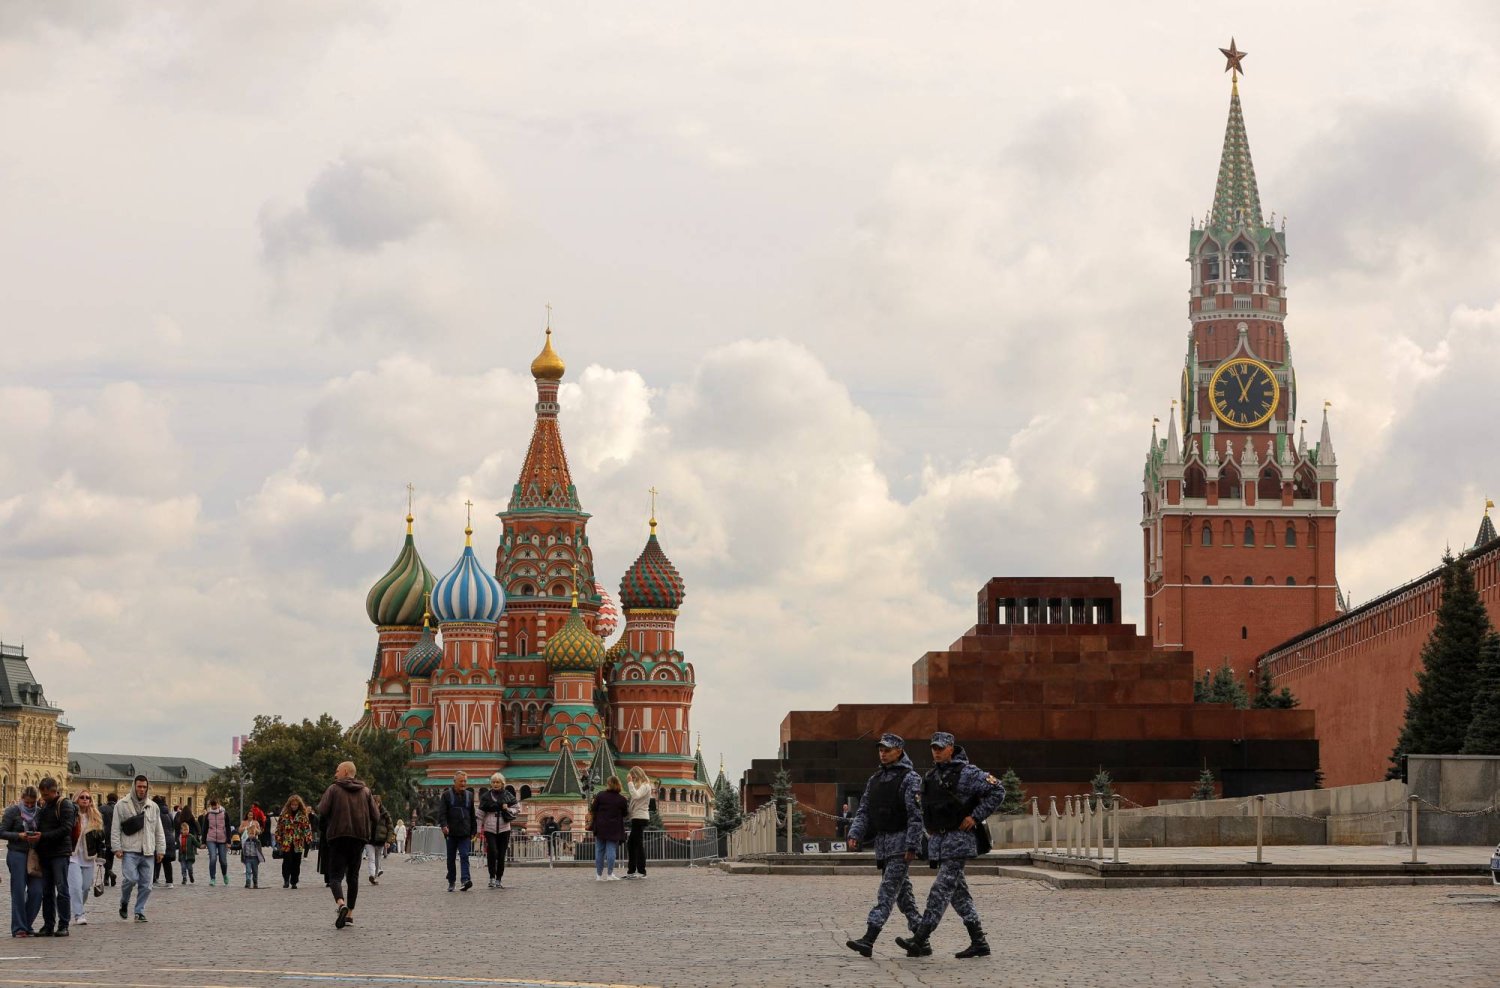 أشخاص يسيرون عبر الساحة الحمراء بالقرب من كاتدرائية القديس باسيل وبرج سباسكايا بالكرملين في وسط موسكو (رويترز)